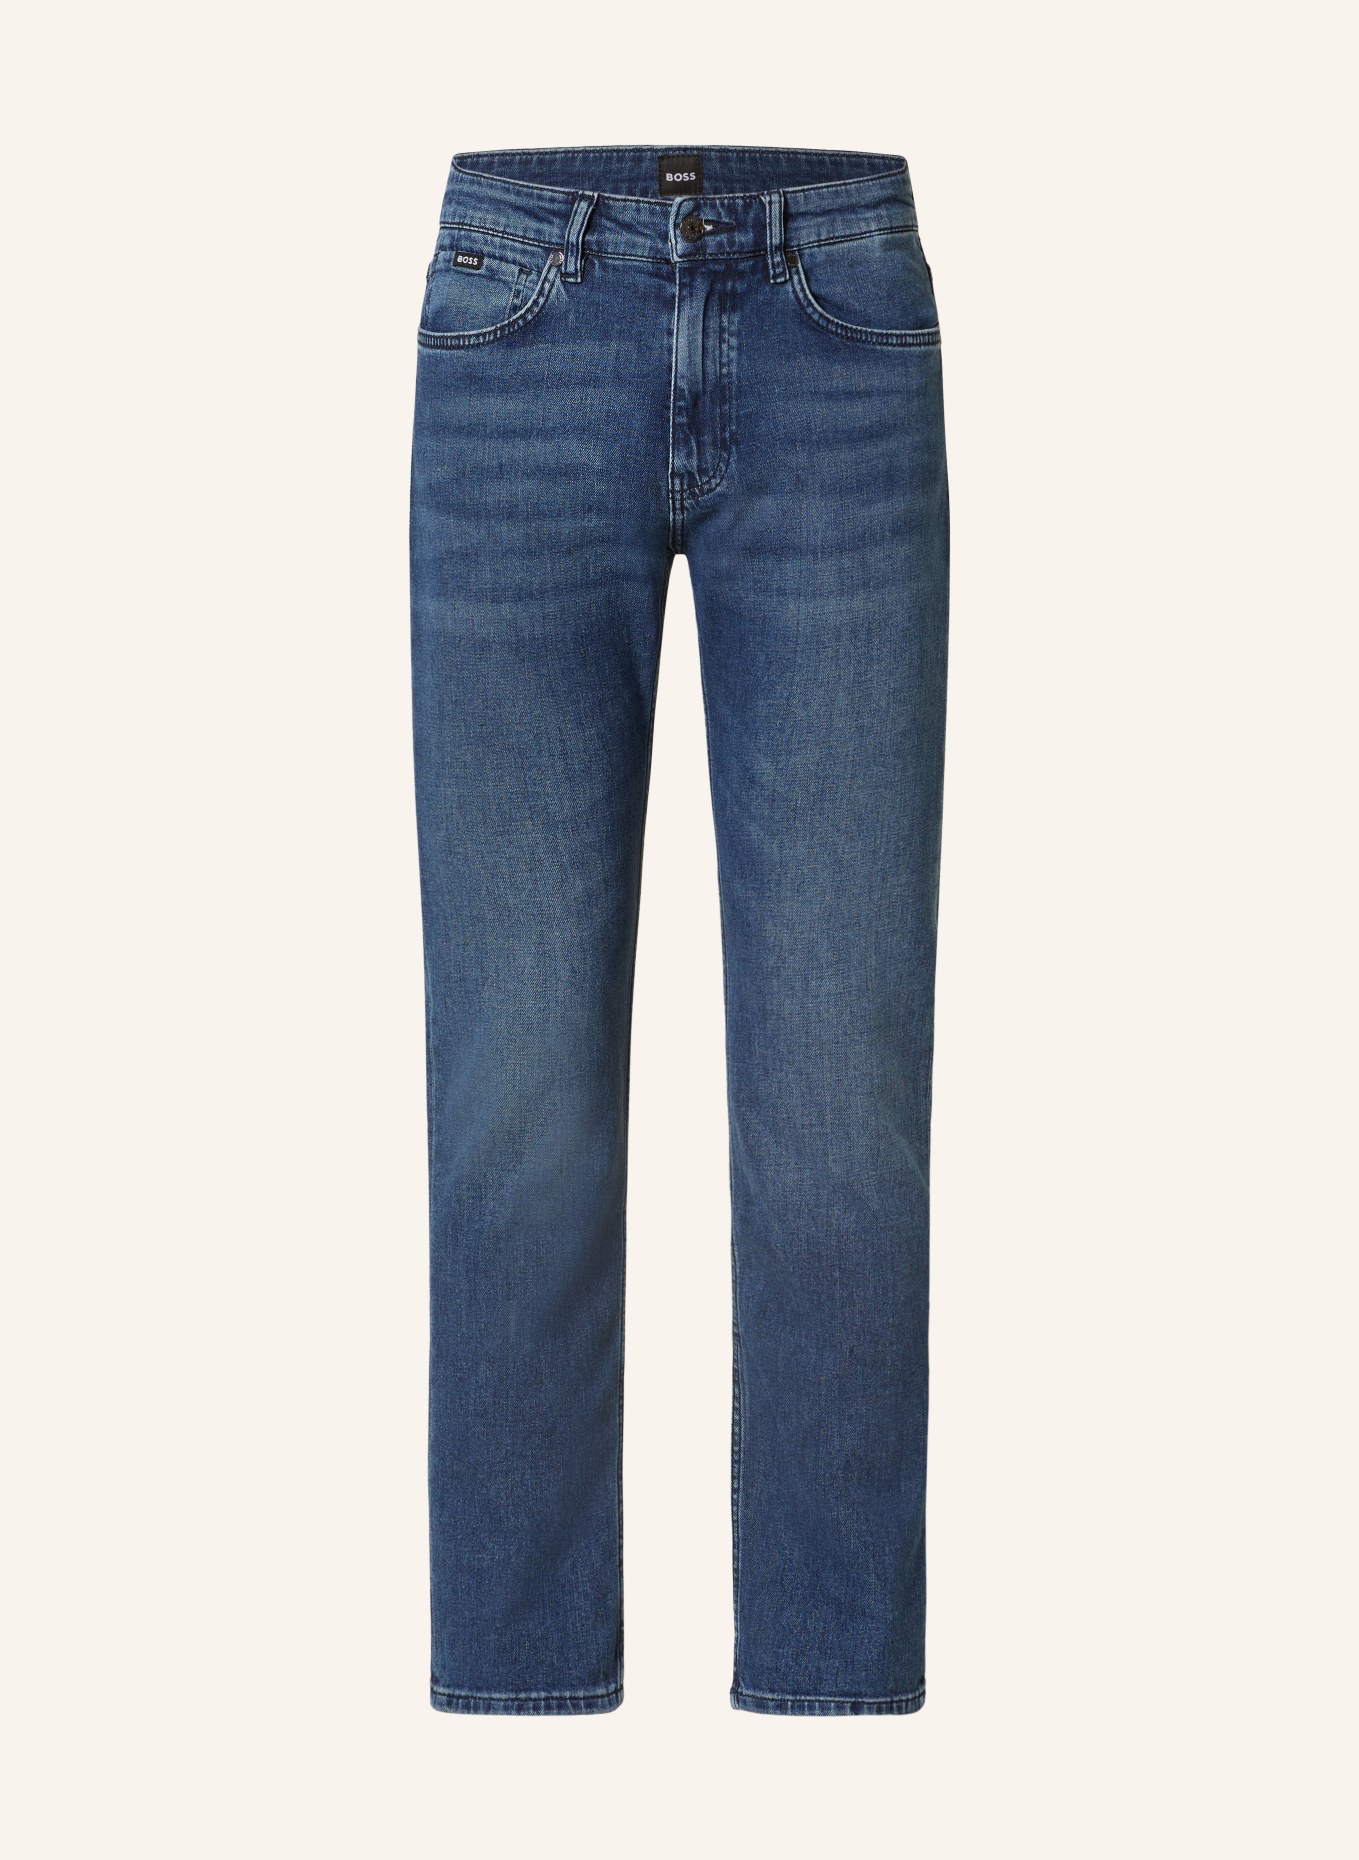 BOSS Jeans DELAWARE Slim Fit, Farbe: 416 NAVY (Bild 1)